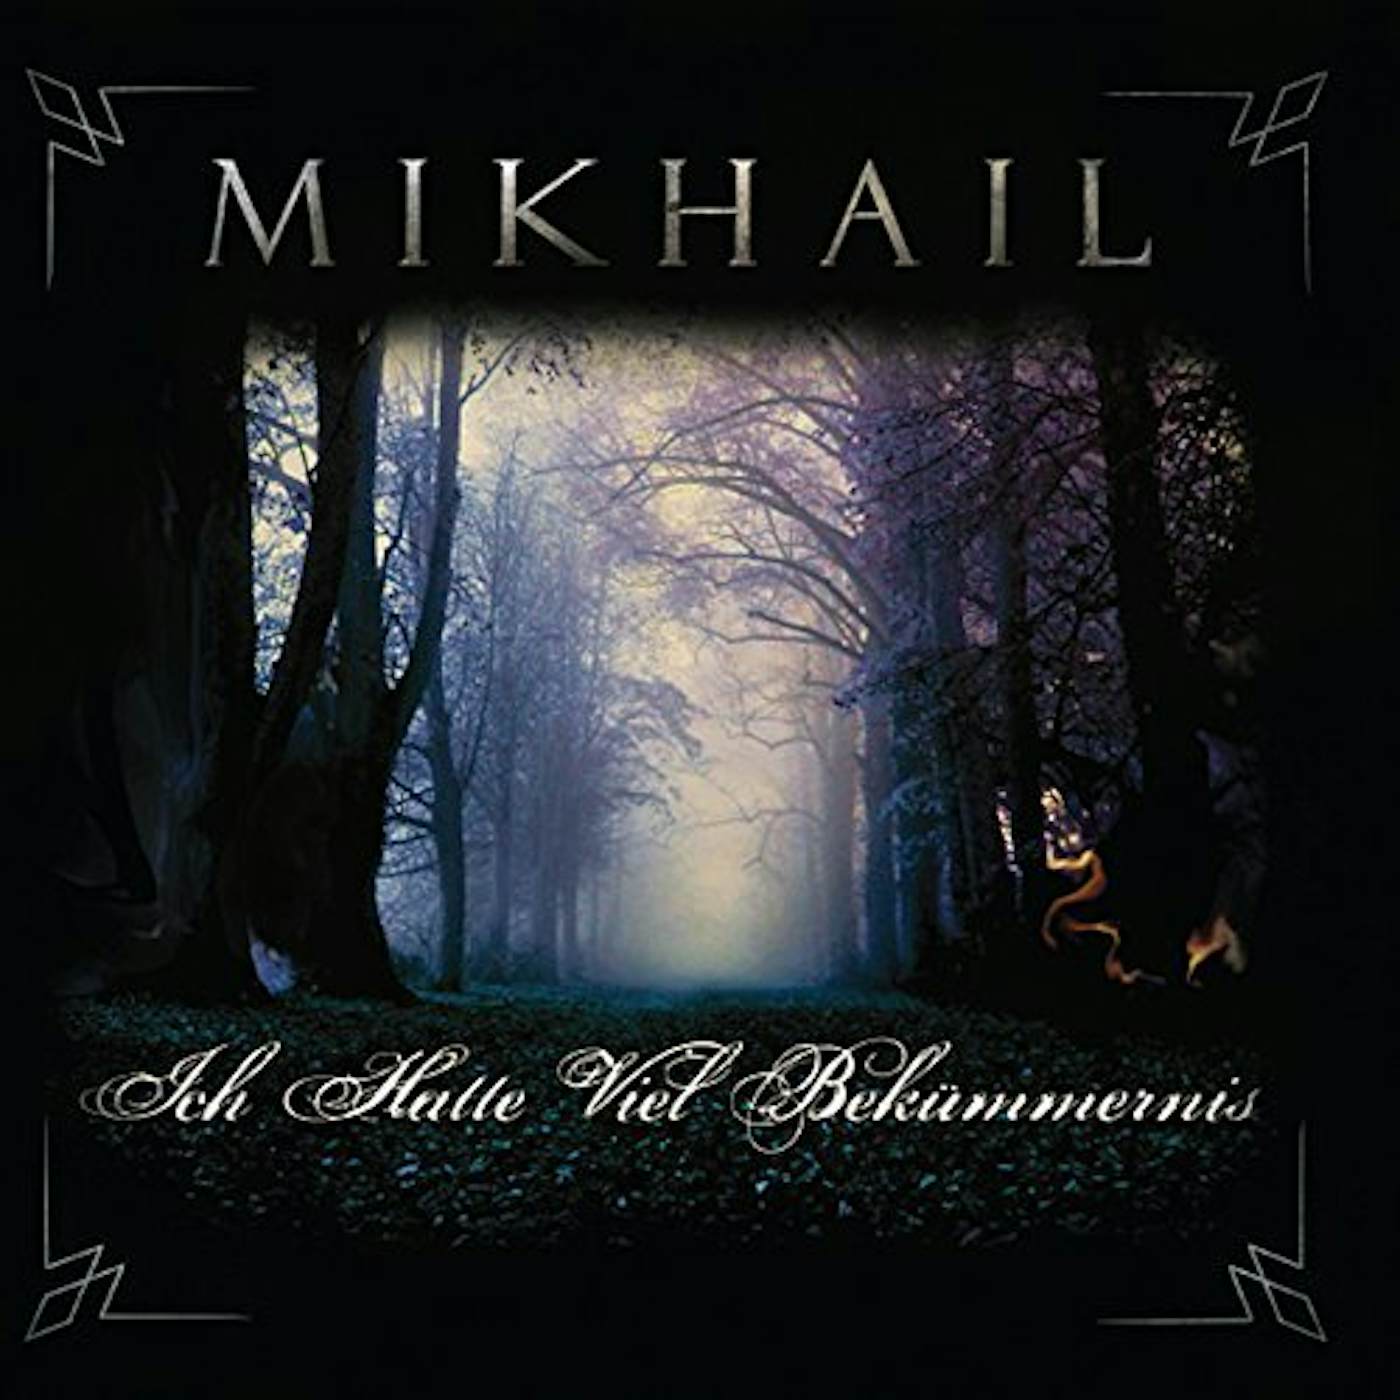 Mikhail ICH HATTE VIEL BEKUMMERNIS CD